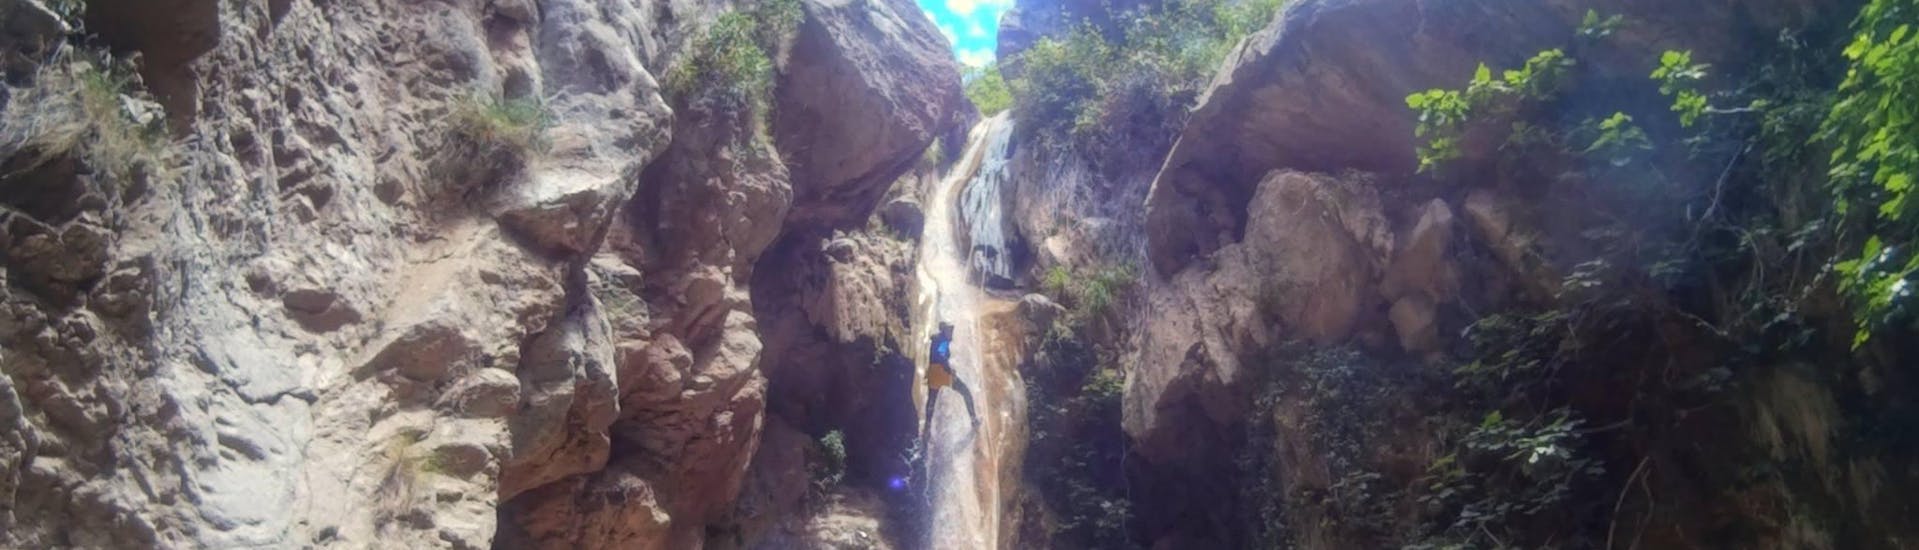 Canyoning di media difficoltà - Parque Natural Sierras de Tejeda, Almijara y Alhama.